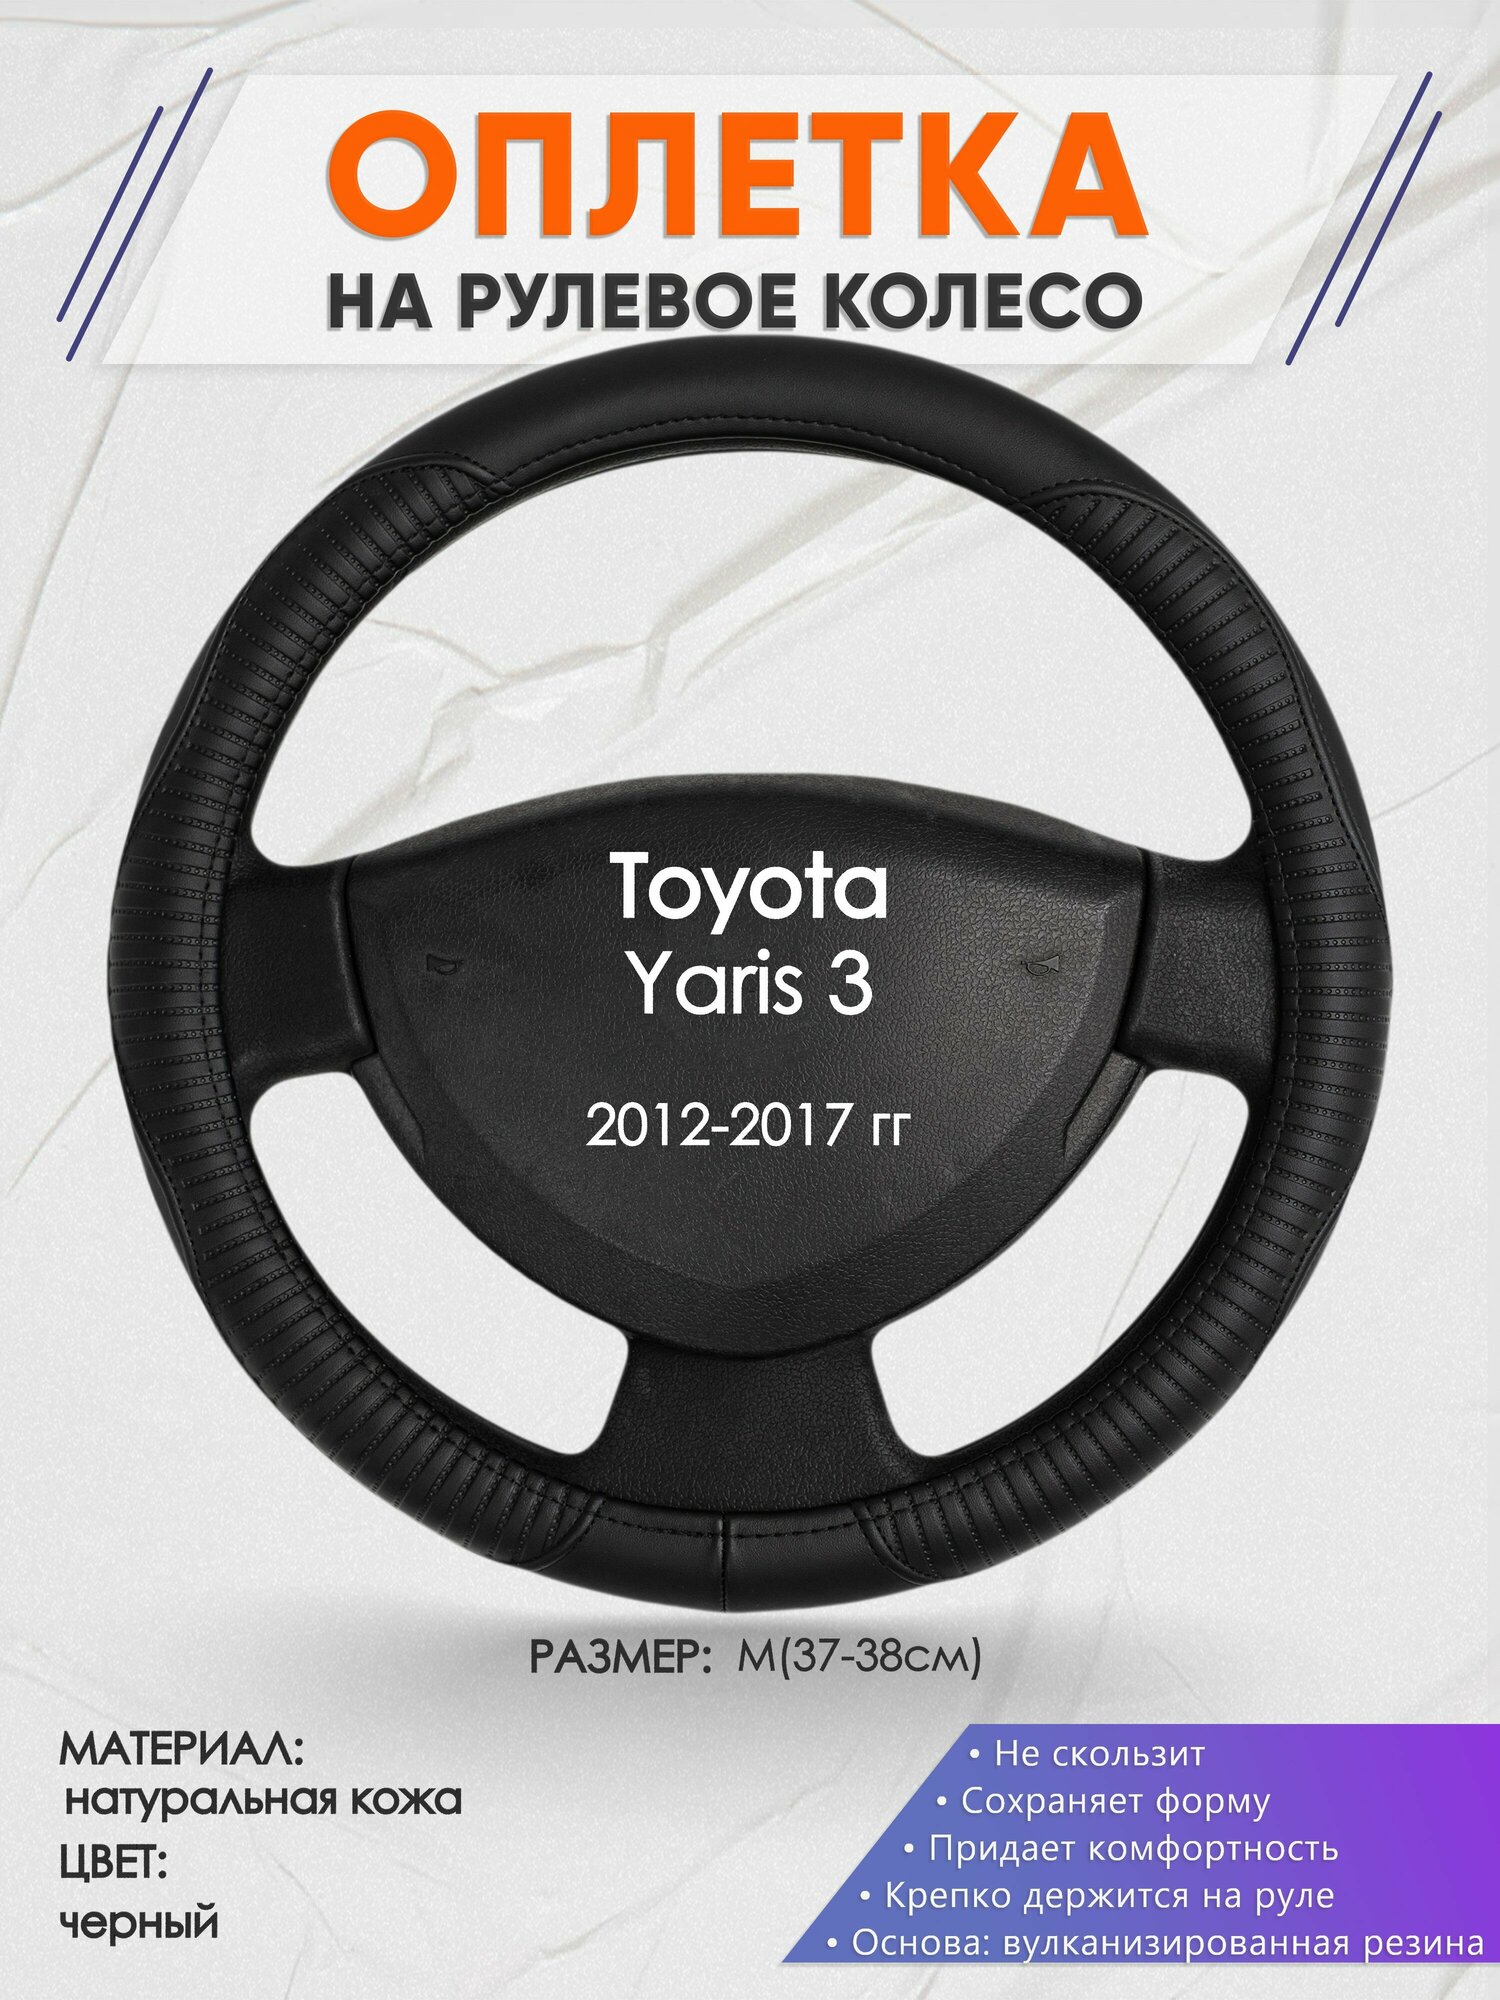 Оплетка на руль для Toyota Yaris 3(Тойота Ярис 3) 2012-2017, M(37-38см), Натуральная кожа 22